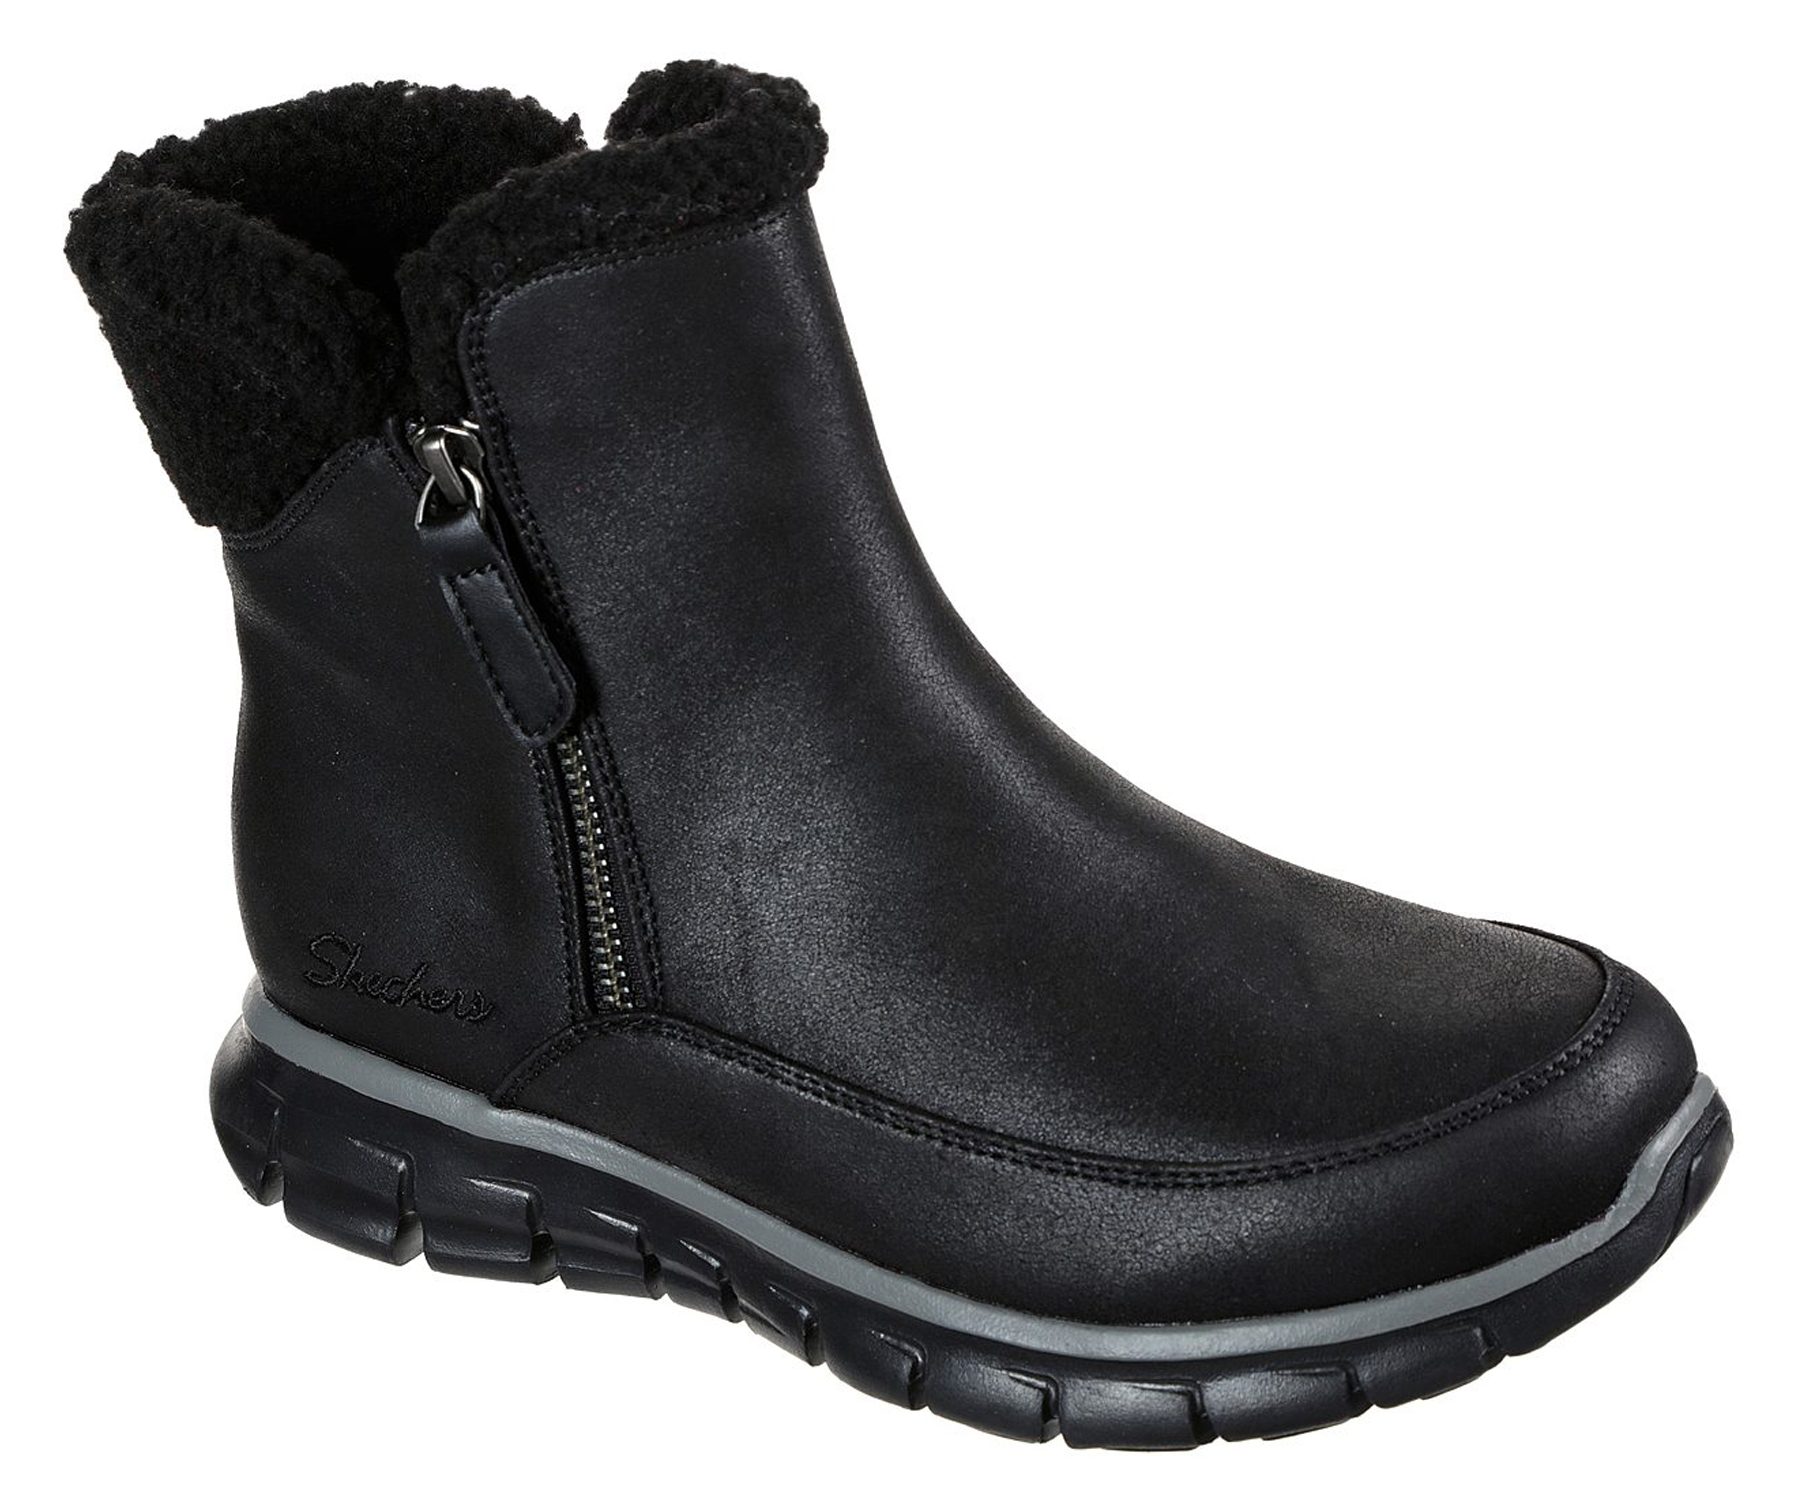 skøjte Gætte deformation Skechers Synergy - Collab Black 44779 BBK - Ankle Boots - Humphries Shoes